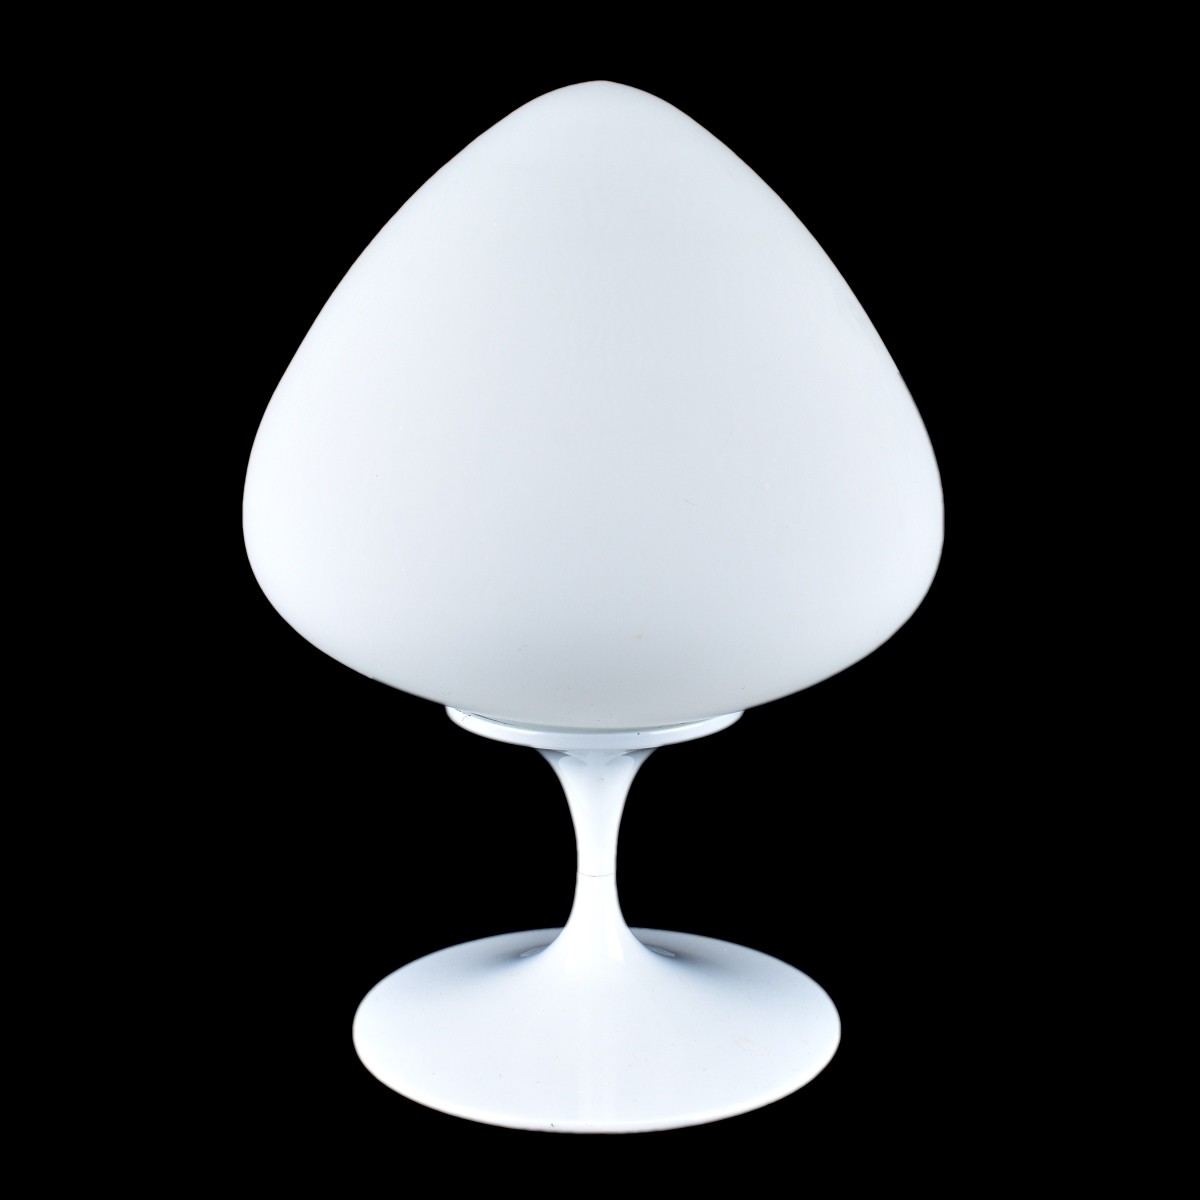 Mid Century Modern Laurel Mushroom Lamp